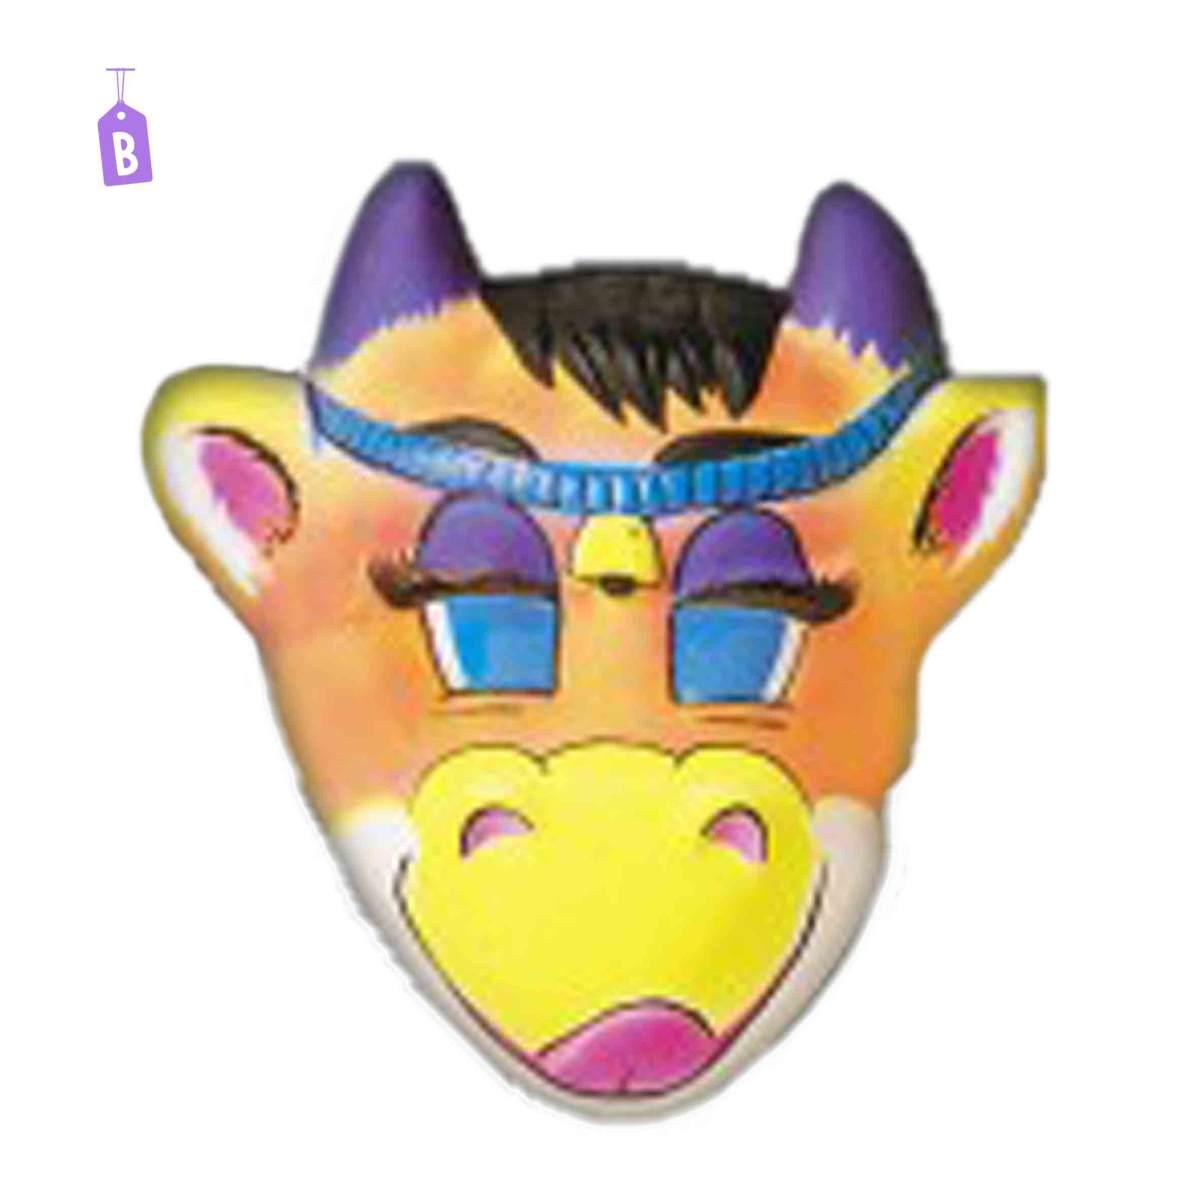 Maschera Animali  Multicolor 6 Modelli